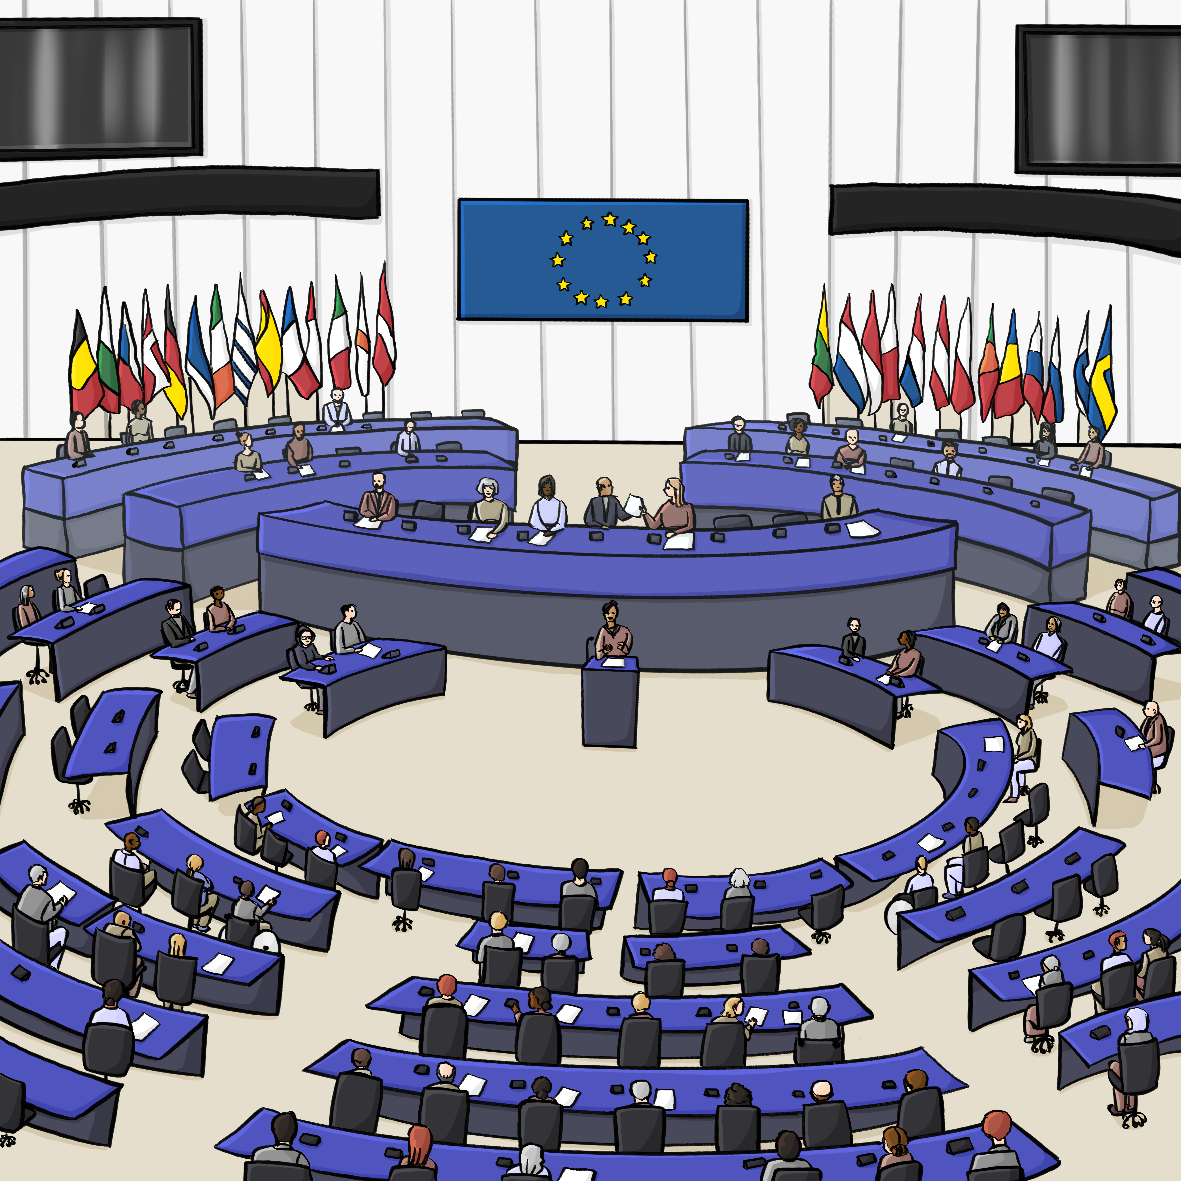 Menschen sitzen an mehreren Reihen bogenförmiger Tische. Vorne steht eine Person an einem Rednerpult. Im Hintergrund stehen viele verschiedene Flaggen. An der Wand hängt die Europaflagge.